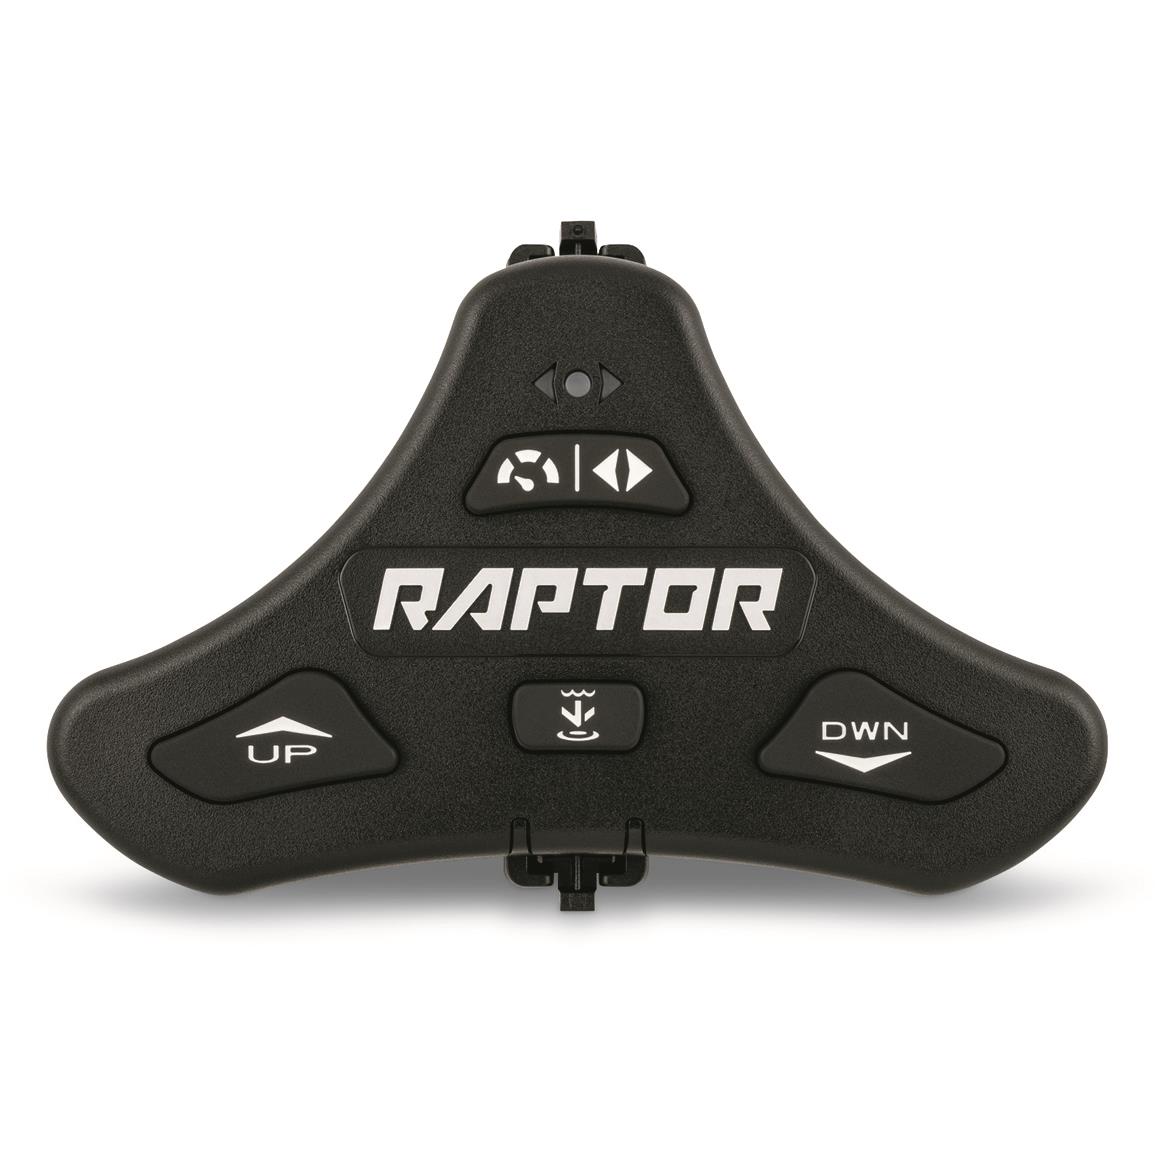 Minn Kota Raptor Bluetooth Wireless Foot Switch